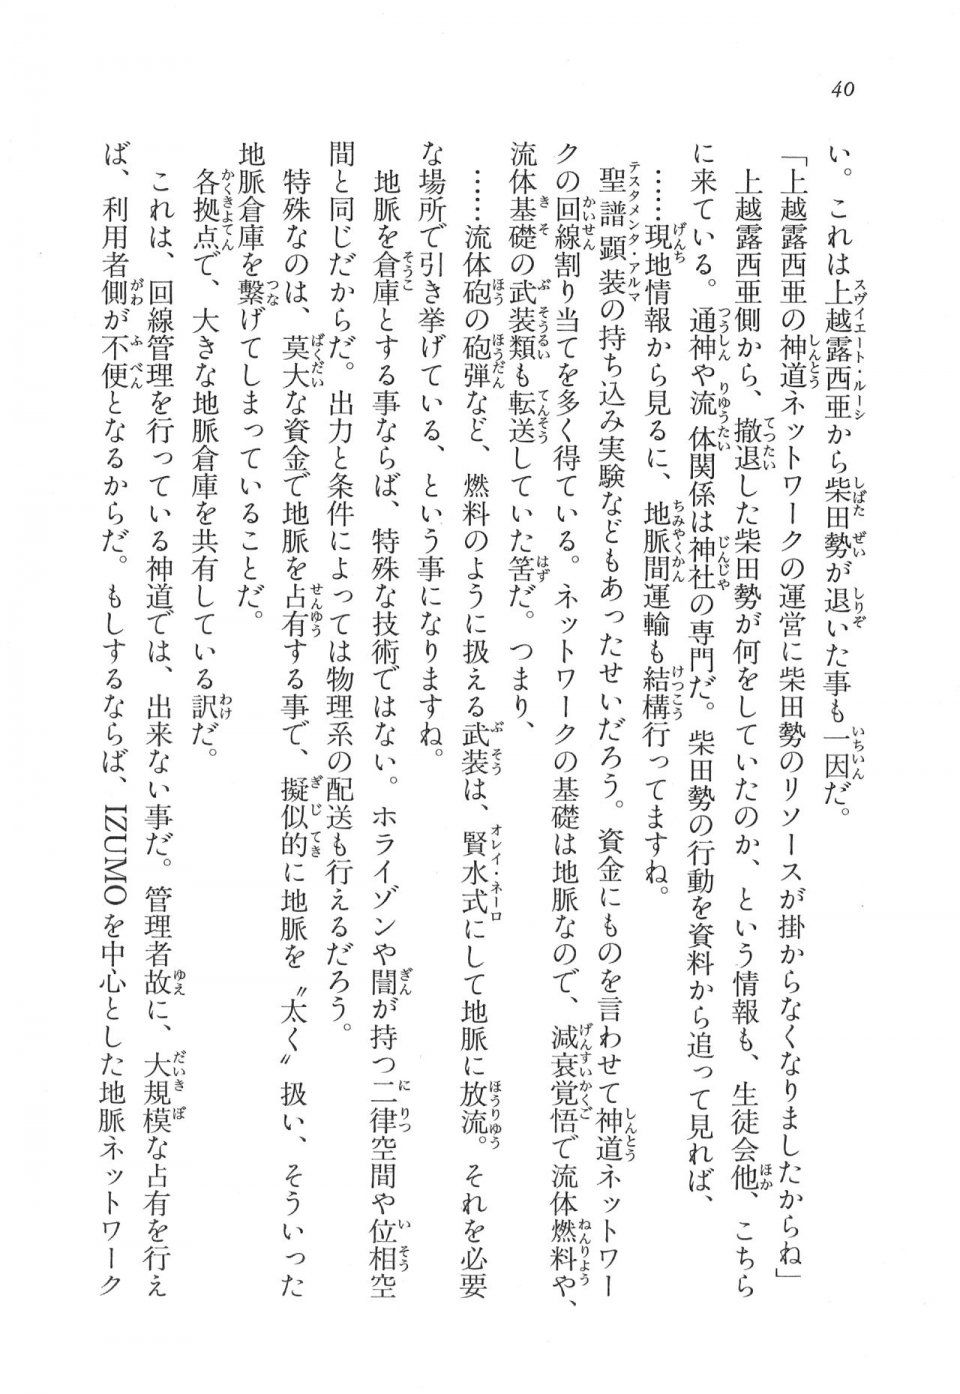 Kyoukai Senjou no Horizon LN Vol 11(5A) - Photo #41